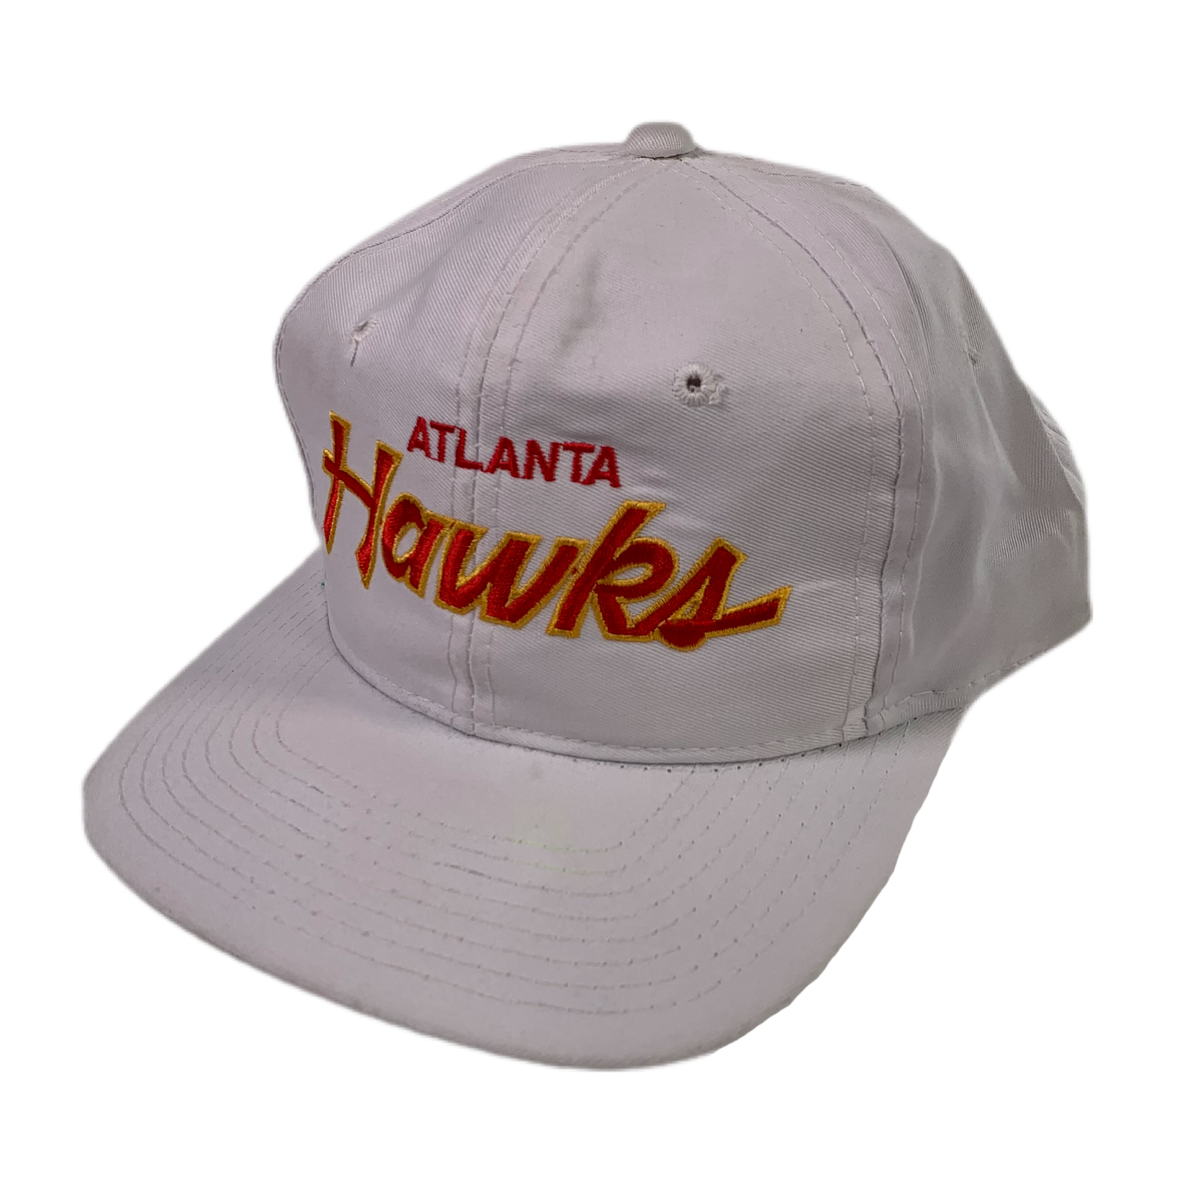 Vintage Atlanta Hawks &quot;Throwback&quot; NBA Hat